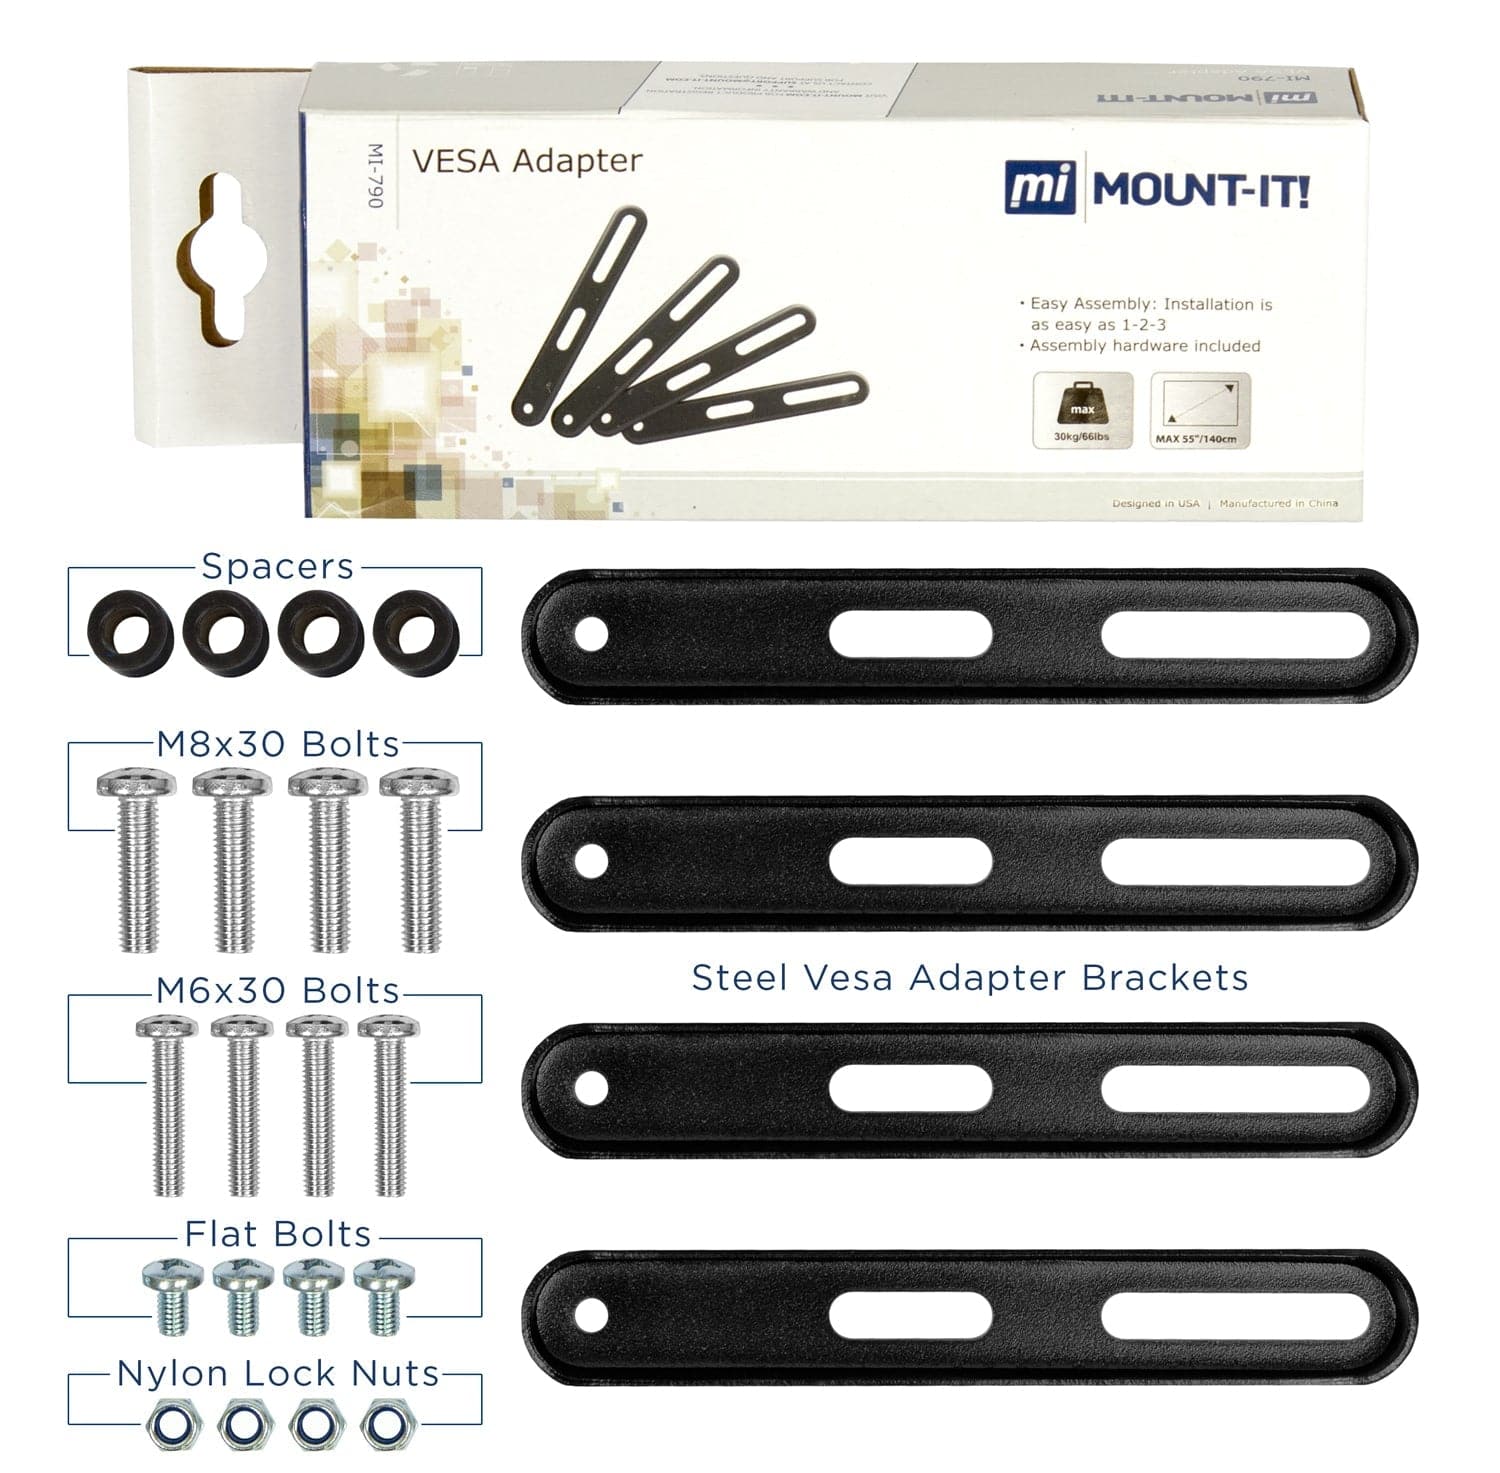 Heavy Duty VESA Adapter Mounting Kit – Mount-It!